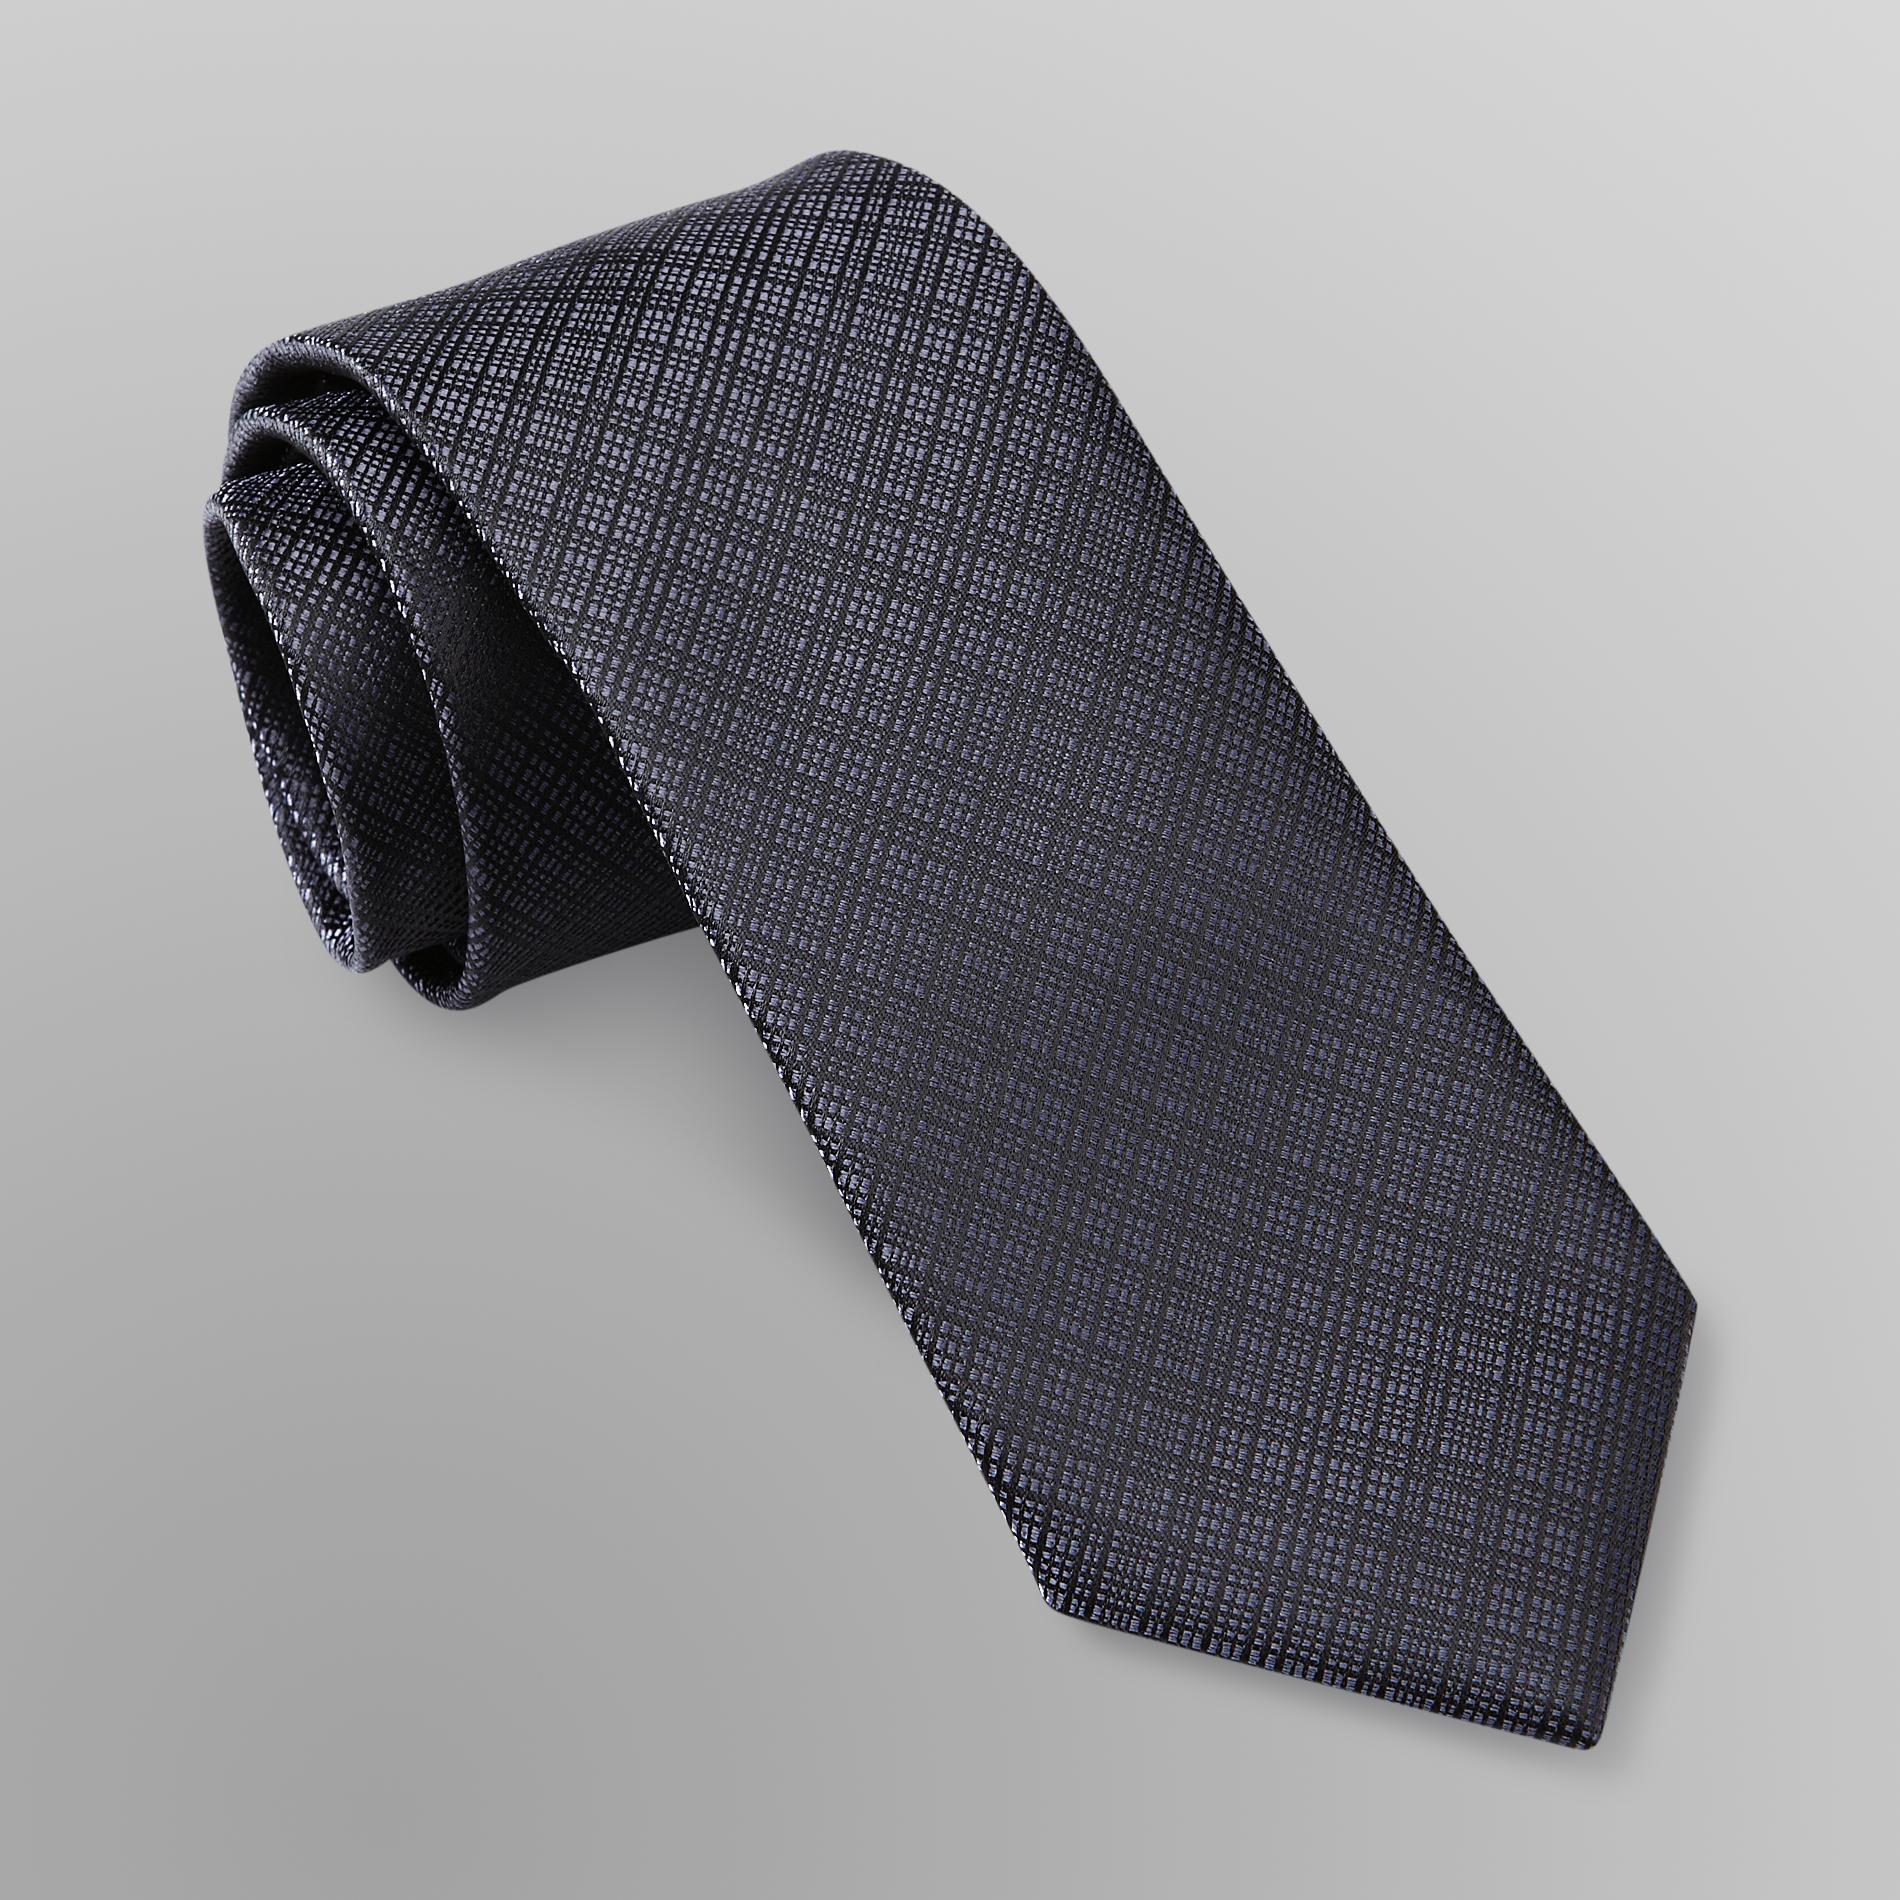 Structure Men's Necktie - Textured Plaid